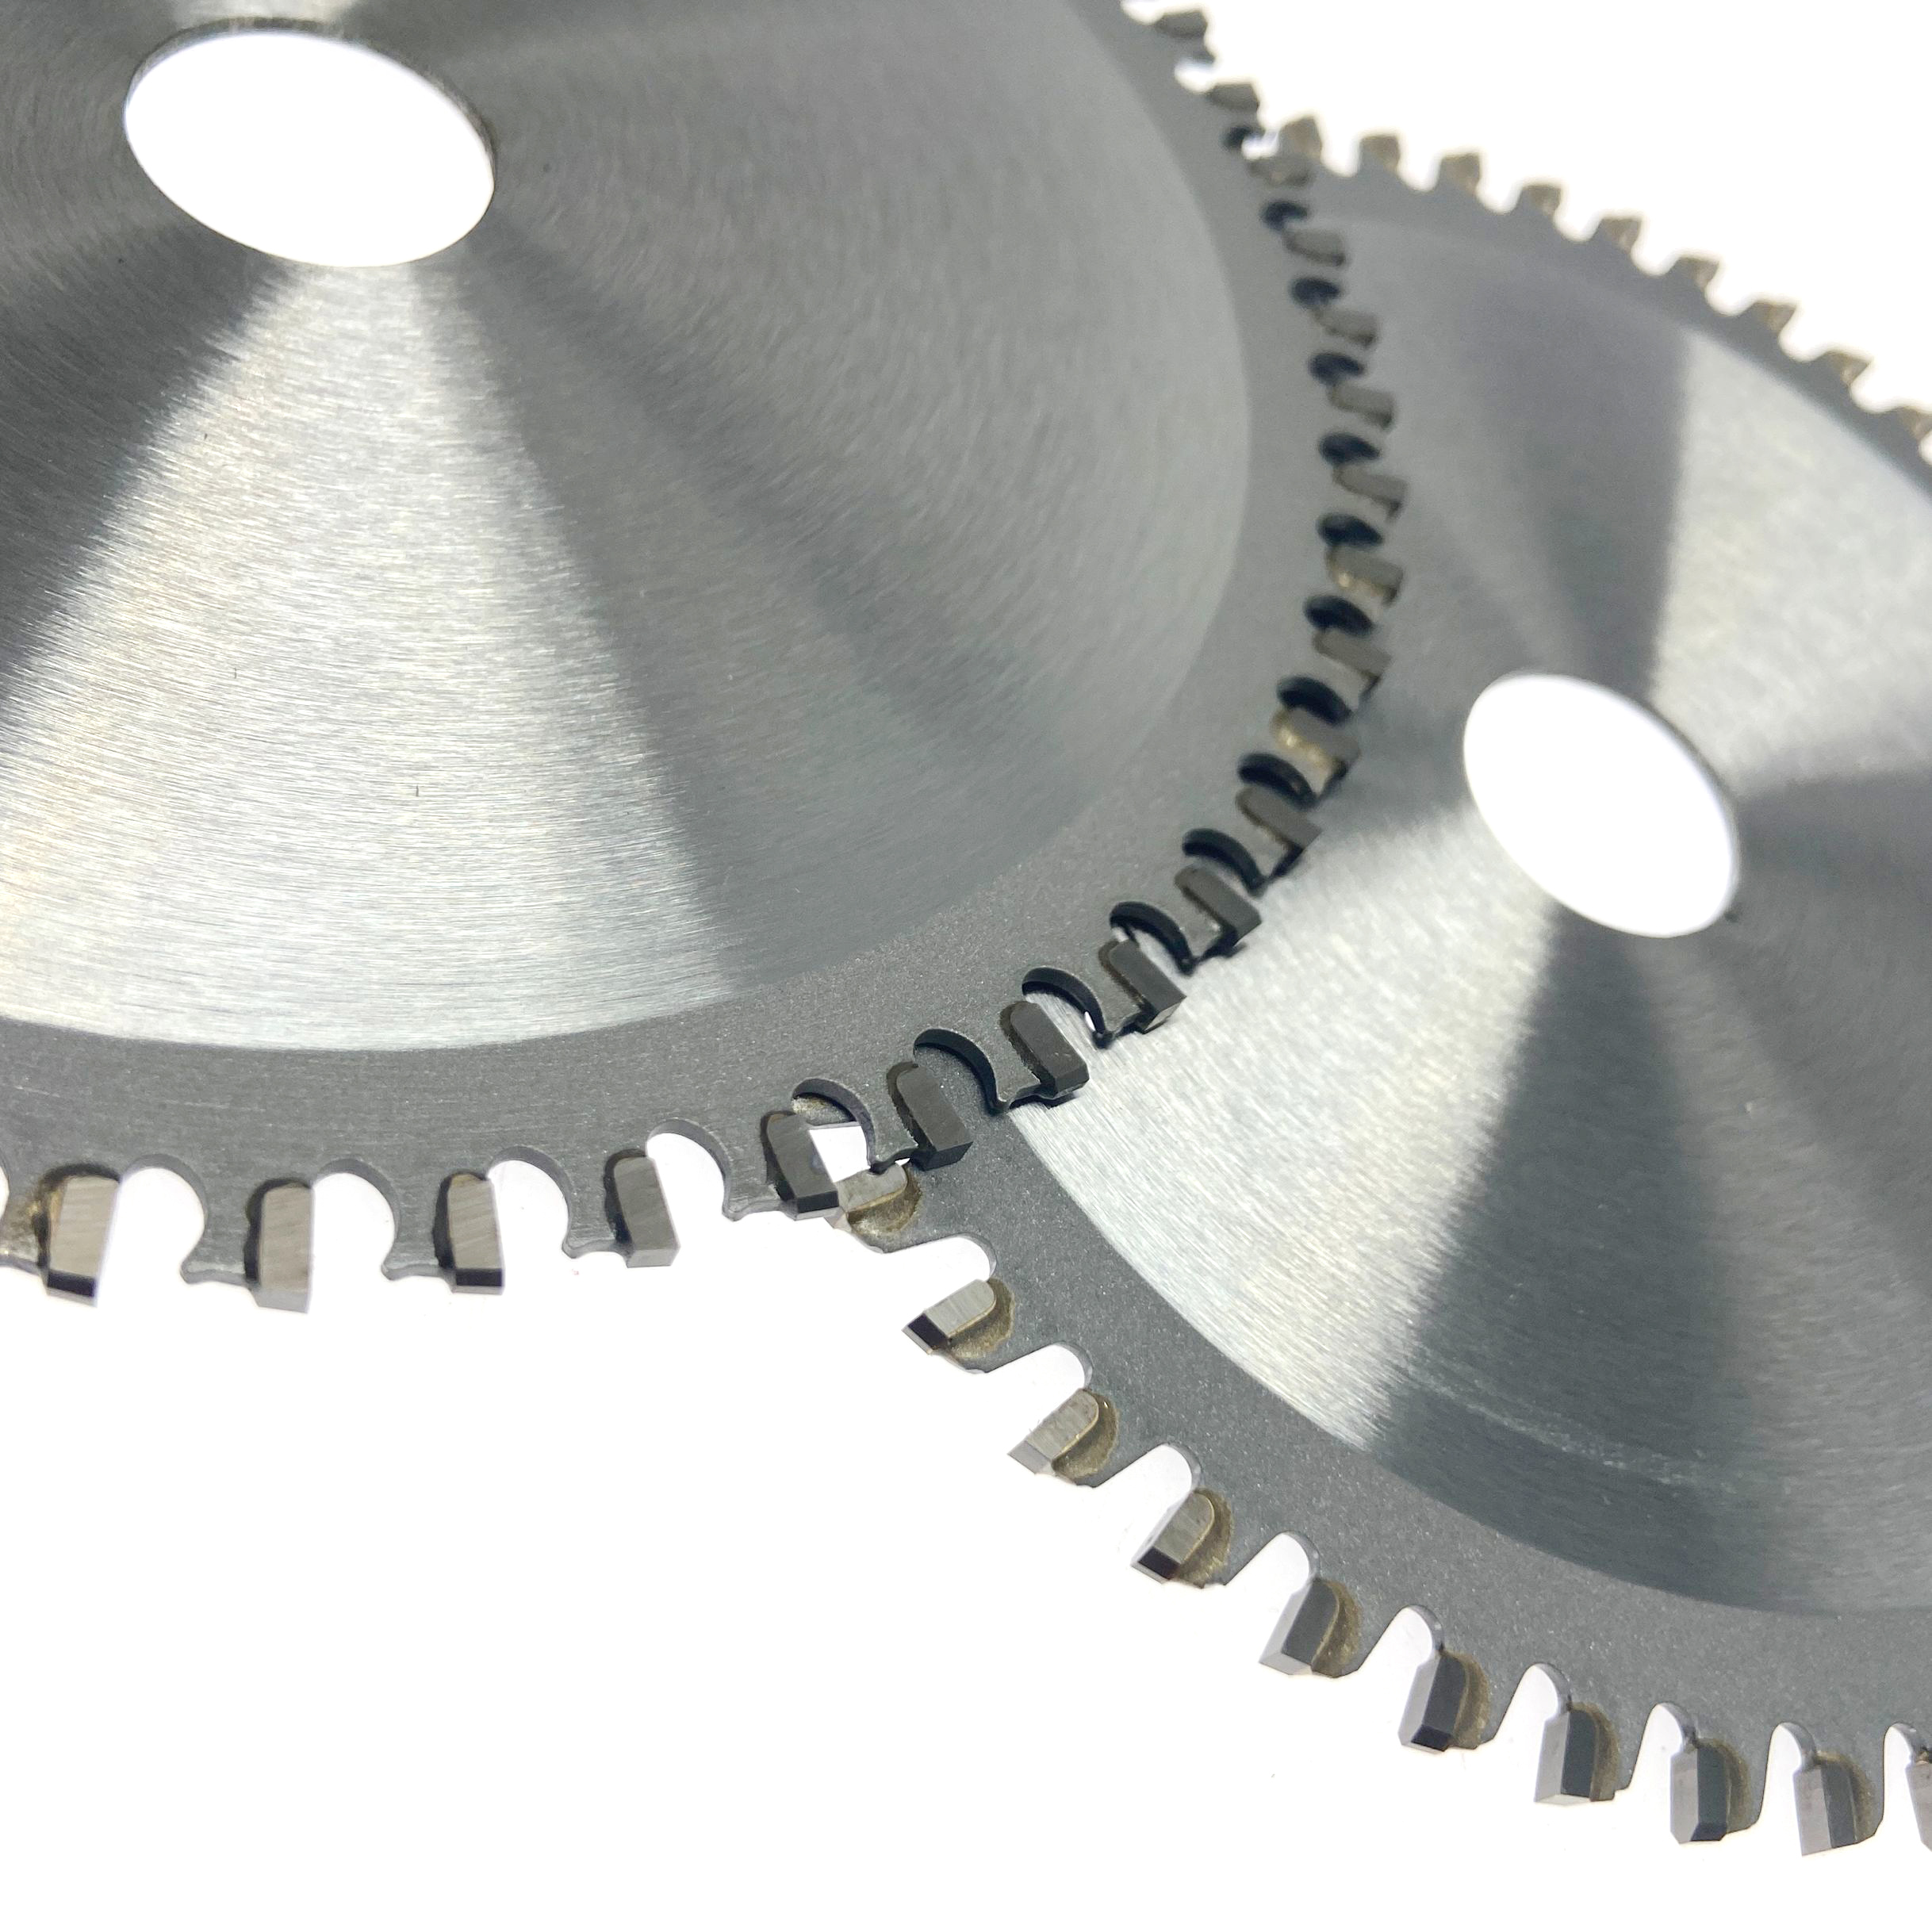 Hoja de sierra circular tct de exportación de 6 pulgadas 140 * 56T * 20 mm para cortar acero metálico